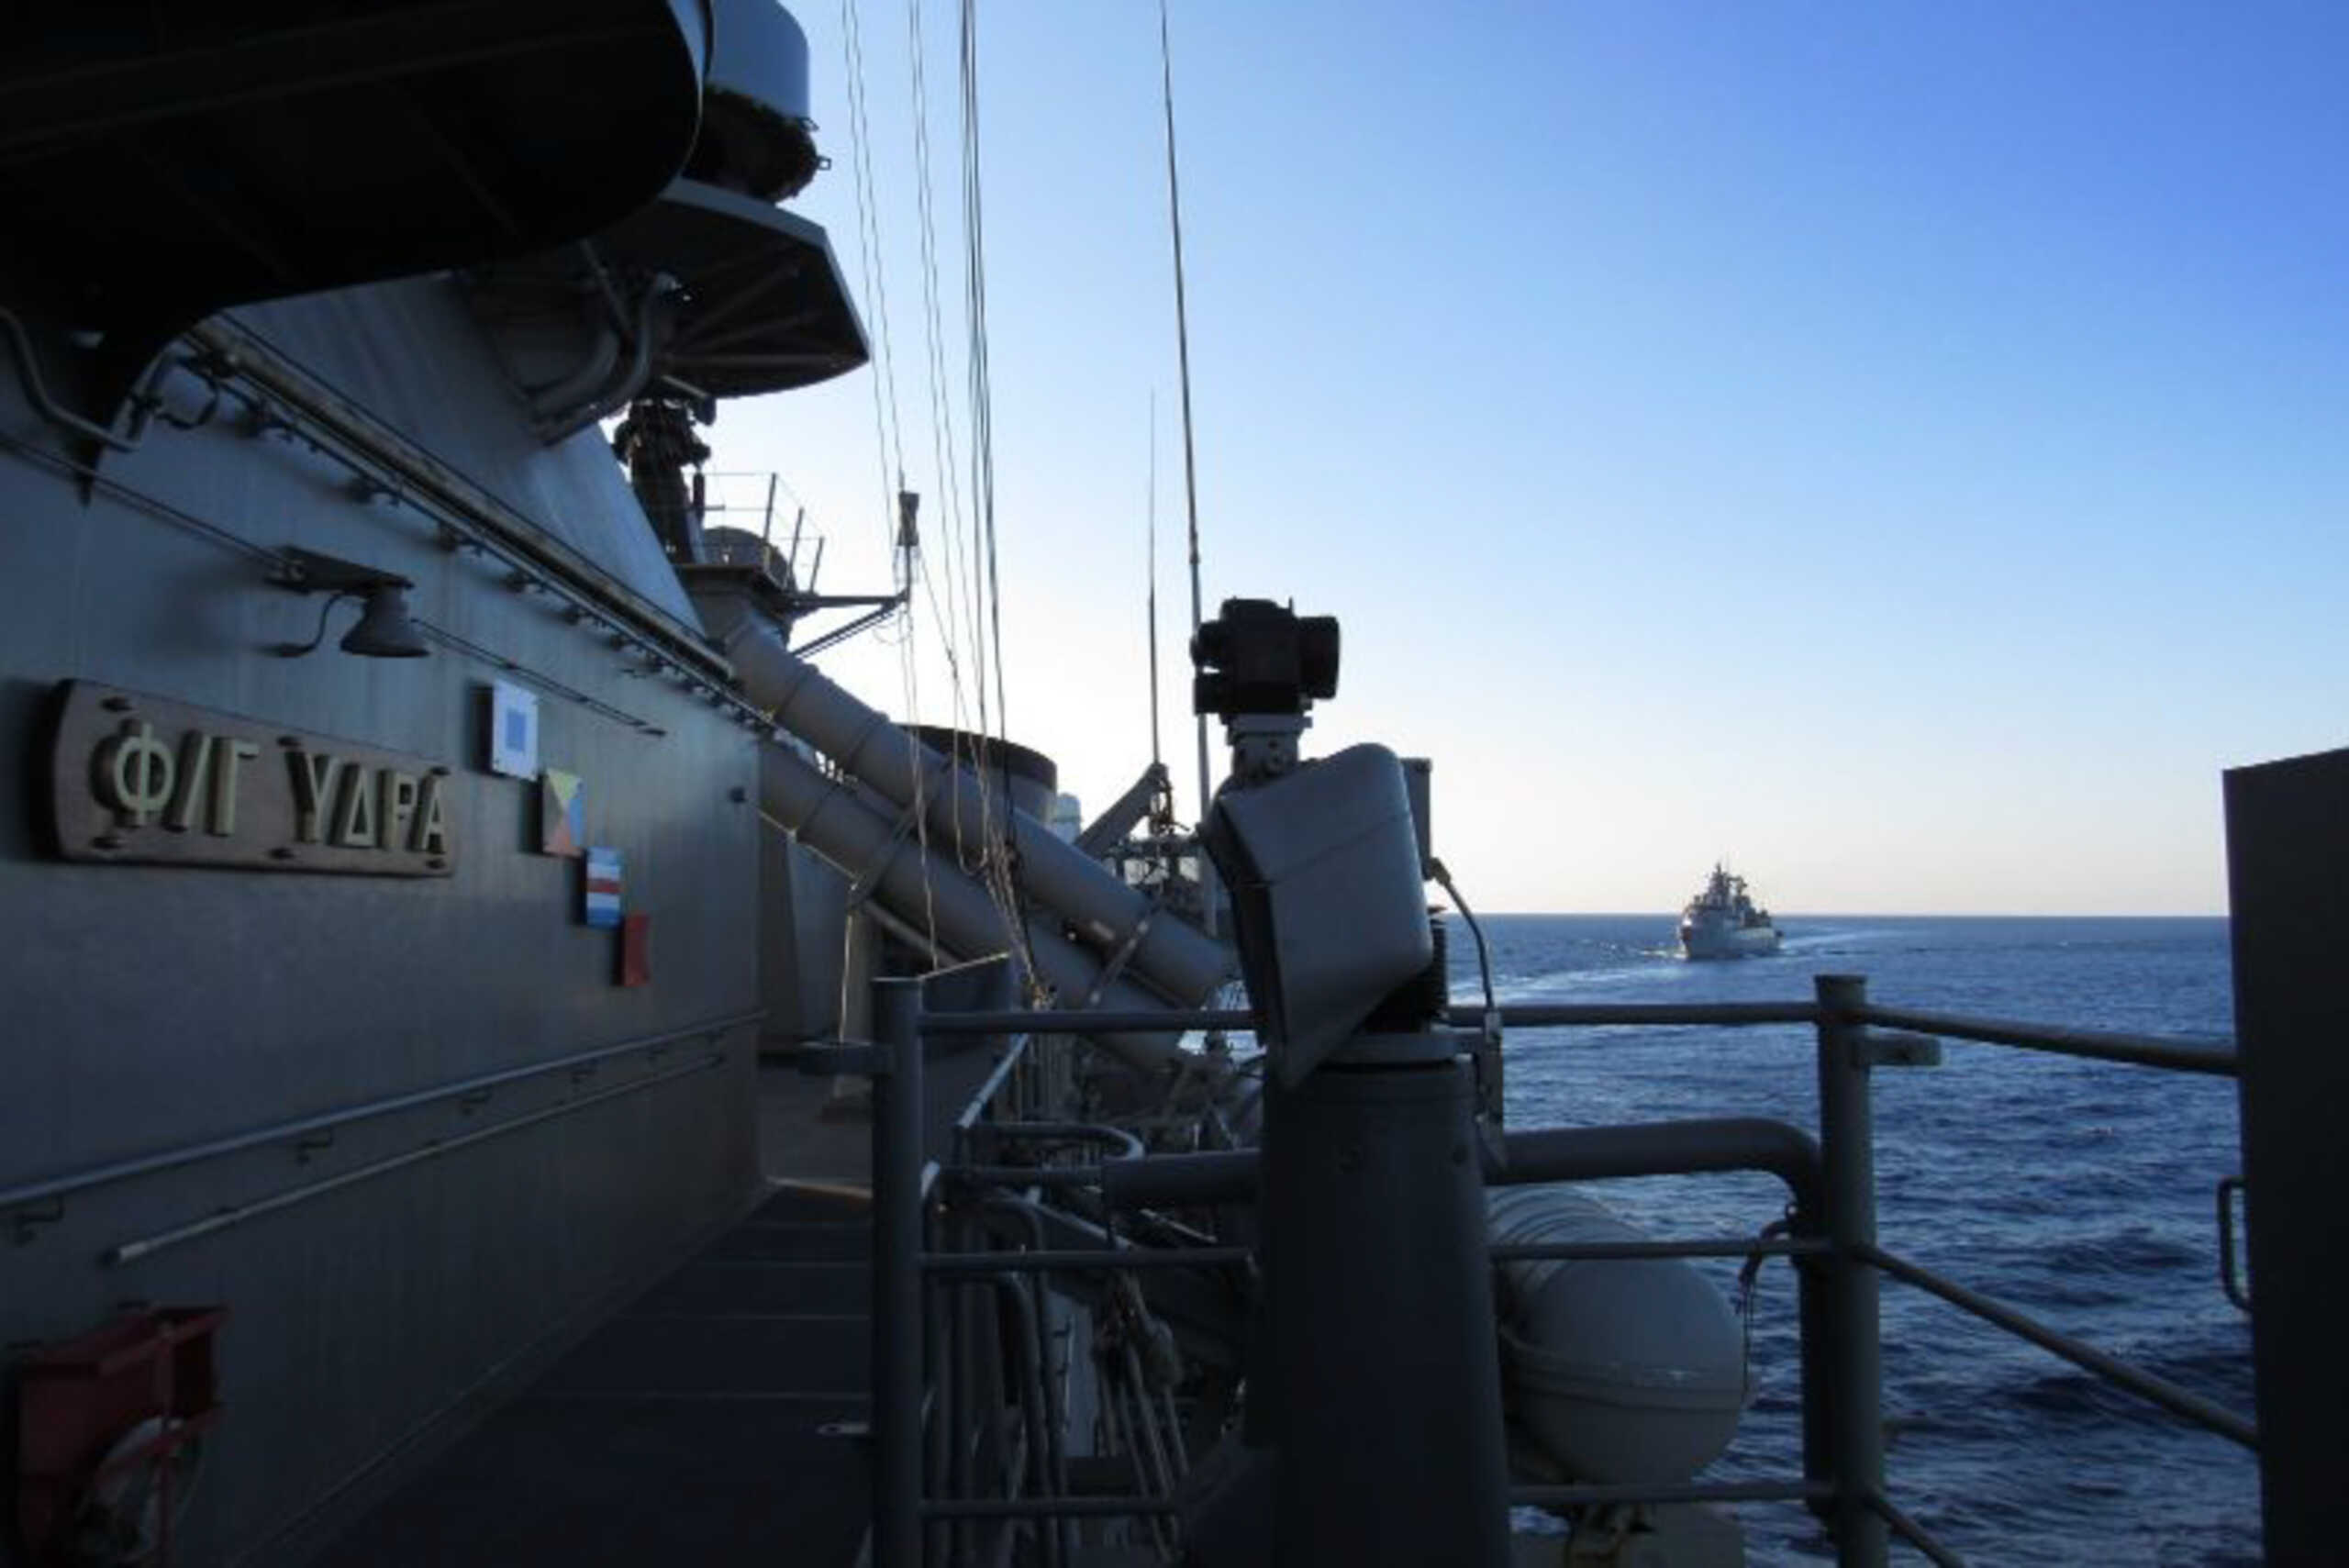 Πολεμικό Ναυτικό: Οι αιτήσεις για αποστρατεία στη φρεγάτα «Ύδρα» δεν έχουν σχέση με την αποστολή στην Ερυθρά Θάλασσα